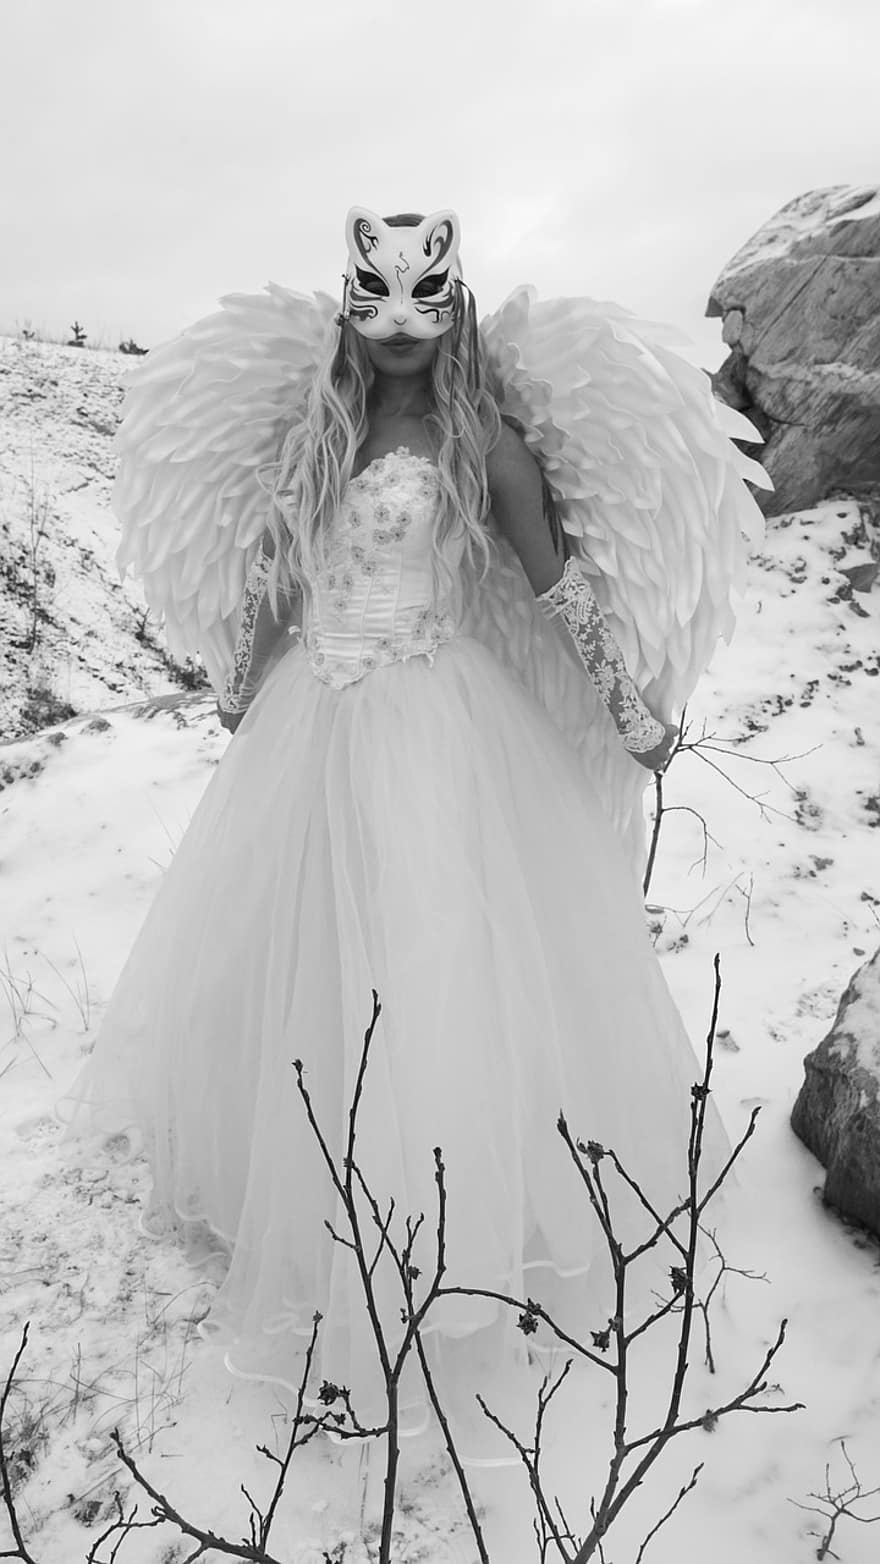 kanatlar, melek, elbise, Öykü, fantezi, kış, kar